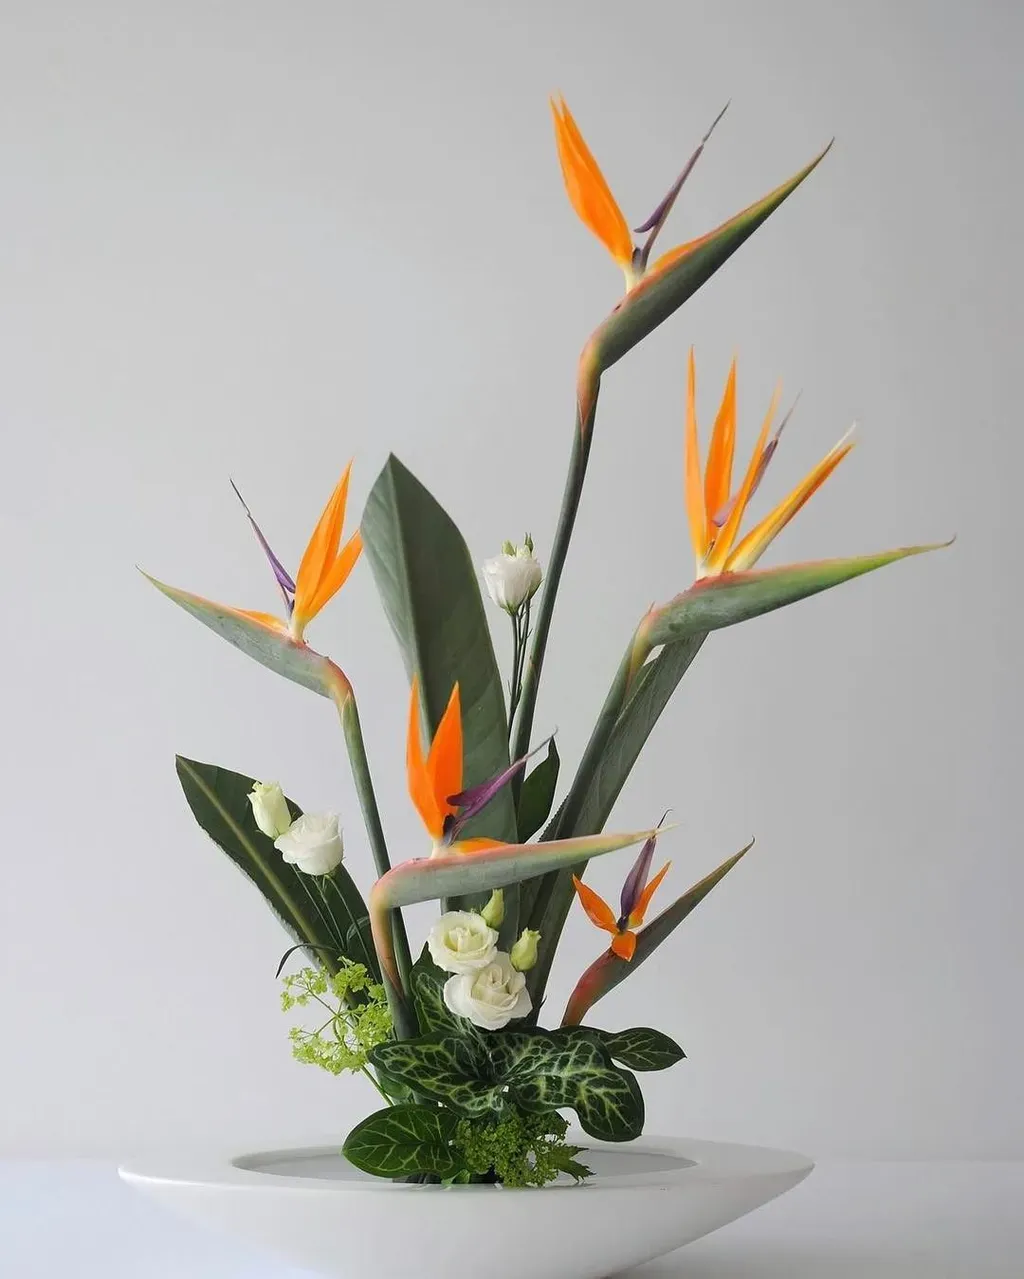 Hoa thiên điểu có thể cắm theo nhiều cách khác nhau, có thể để thân hoa dài hoặc cắt ngắn đều mang lại vẻ đẹp tuyệt vời.